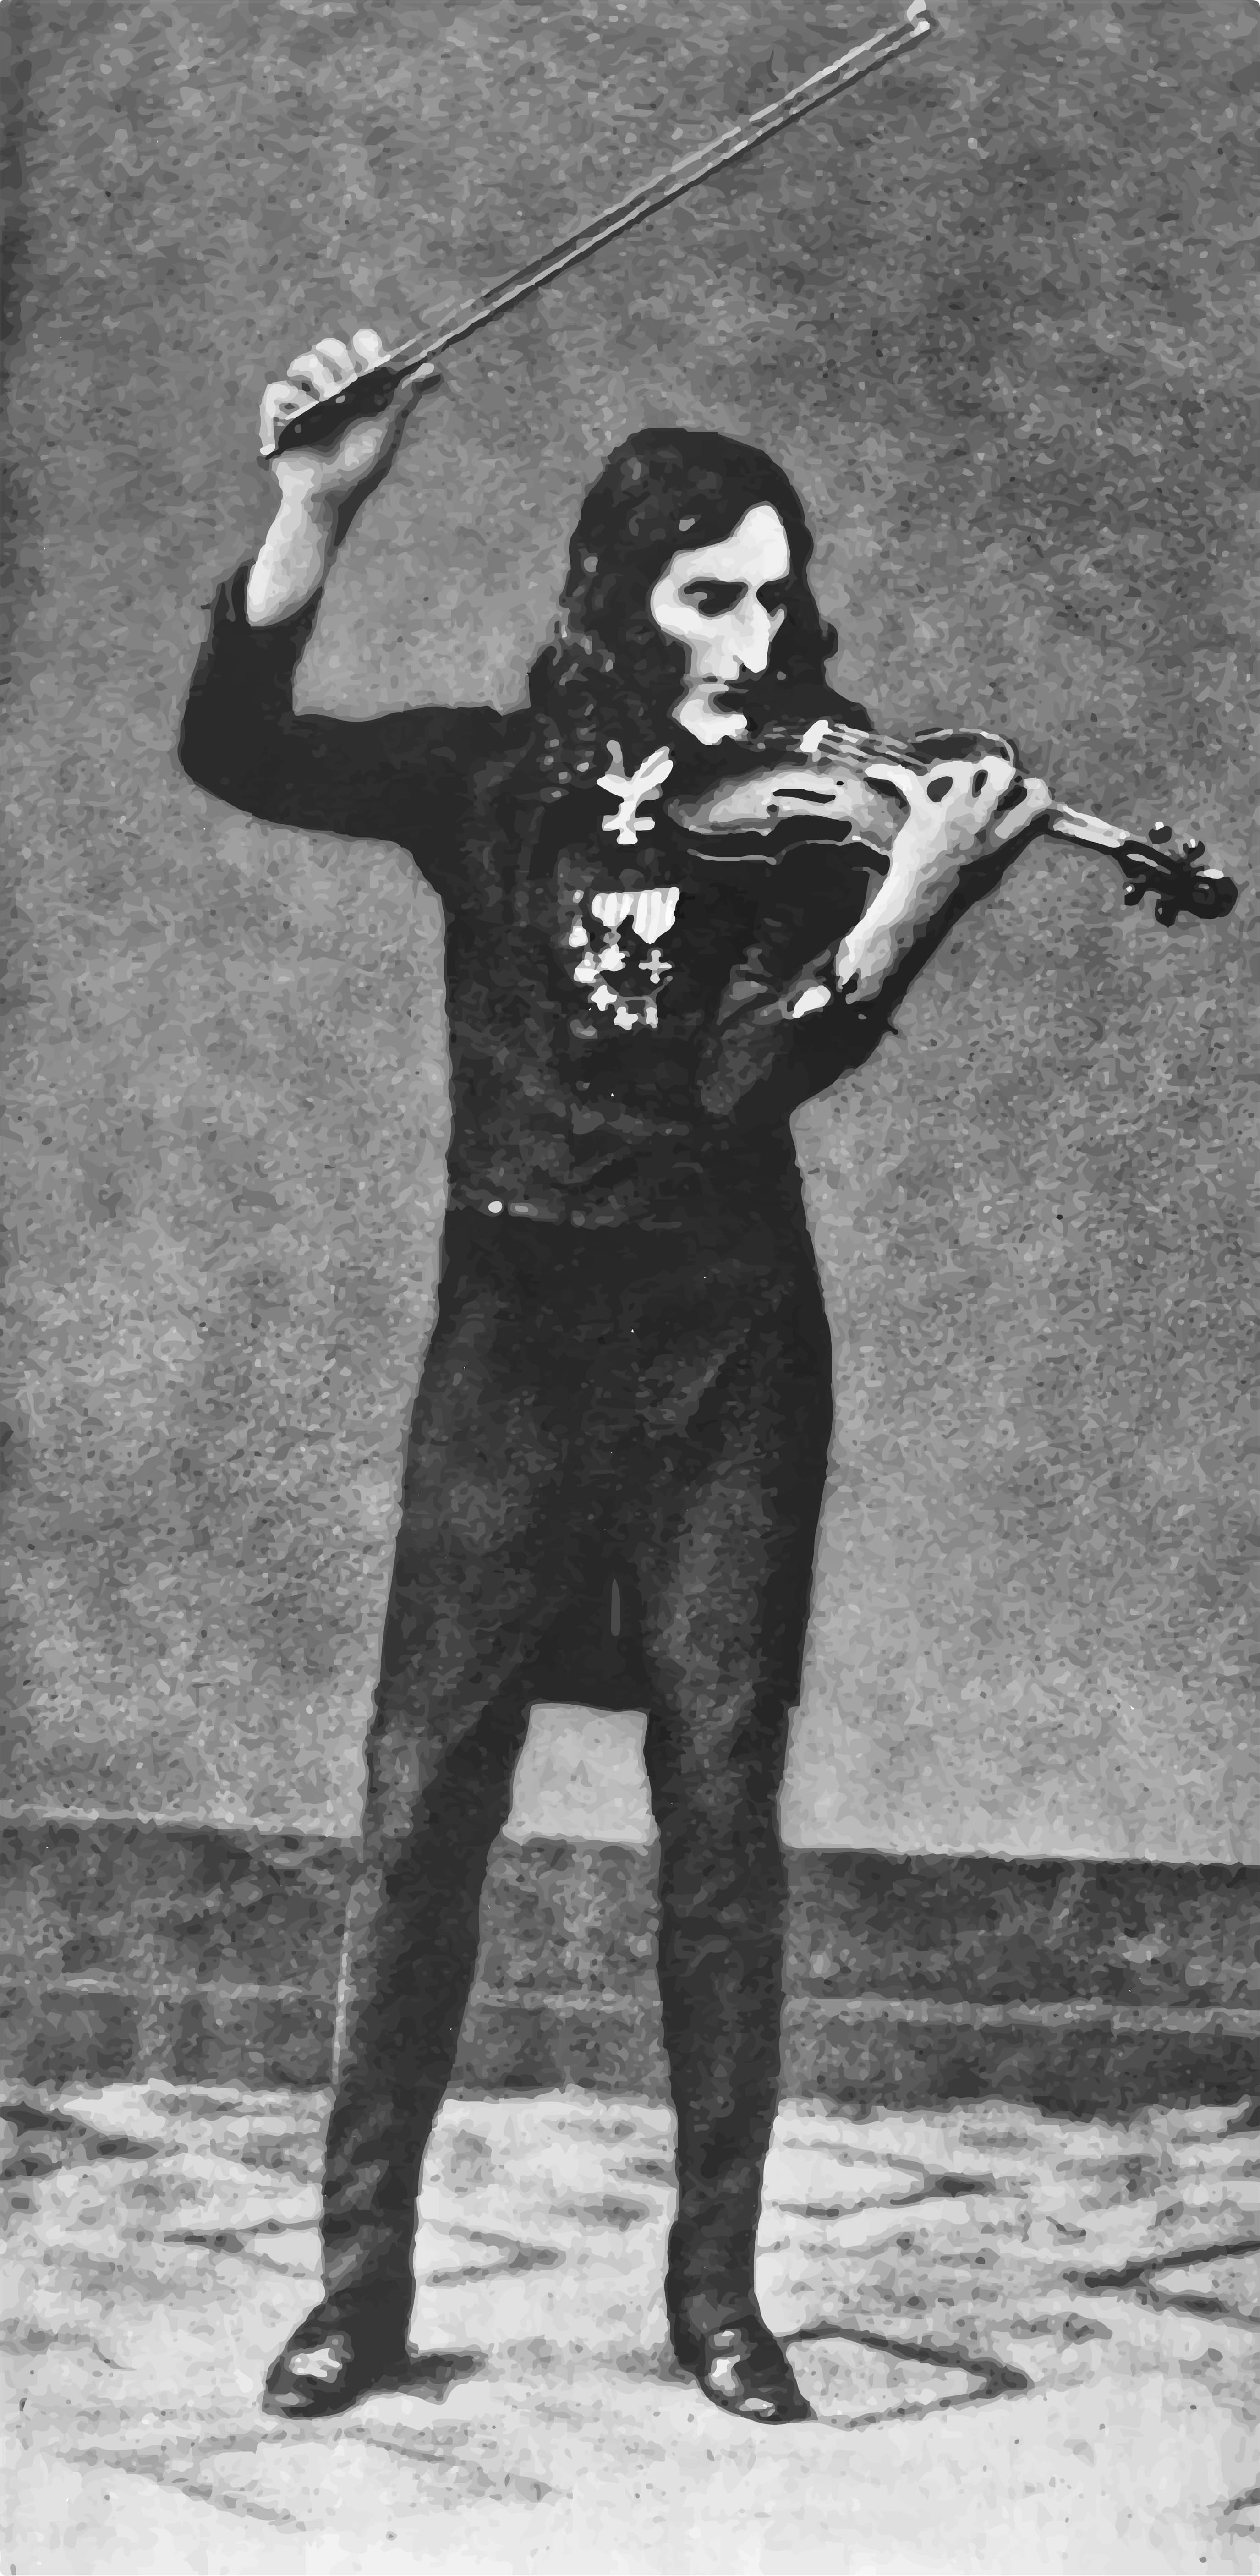 এটি বেহালাবাদকের একটি বিখ্যাত নকল ডাগুরিওটাইপ (প্রাথমিক ছবি)। Image source: https://www.classicfm.com/composers/paganini/niccolo-gifted-violinist-deal-with-devil/